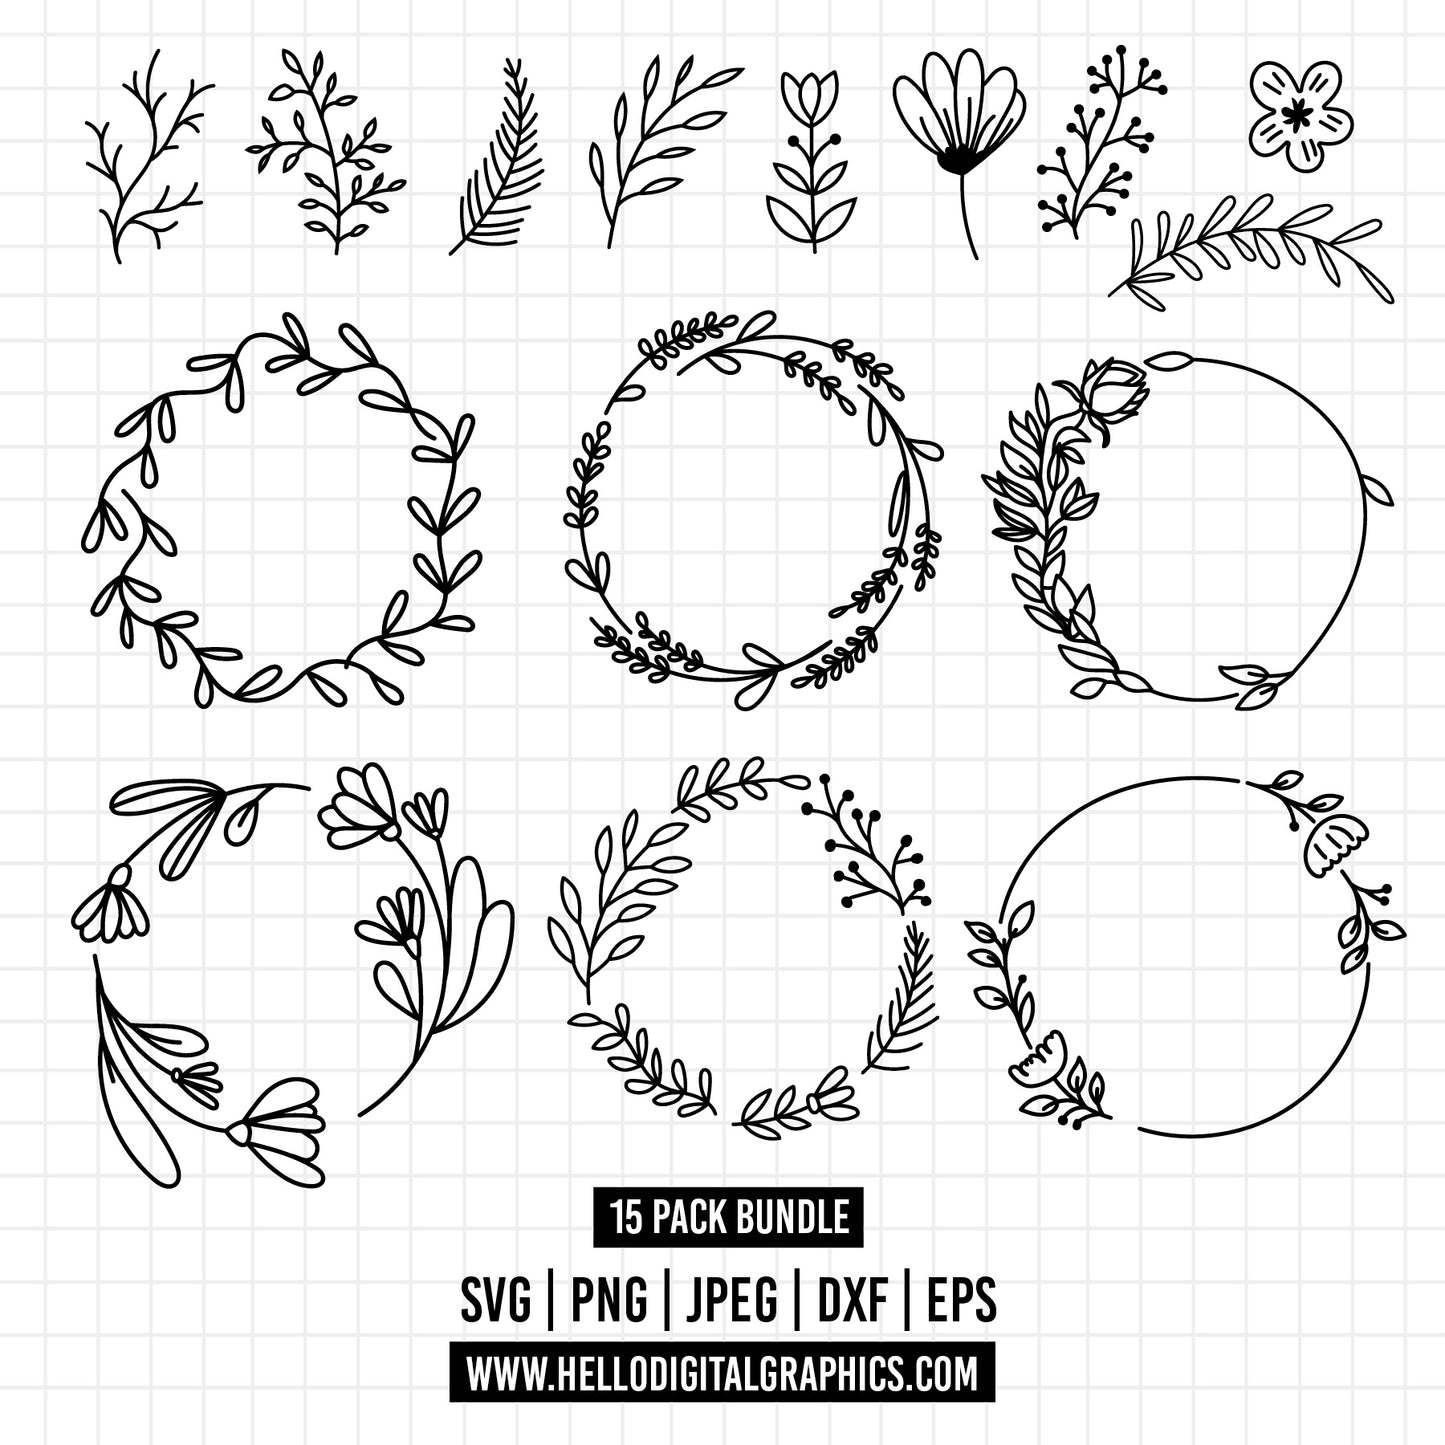 COD1314  Flowers doodle cliparts, Succulent SVG, CACTUS SVG, House Plants Clipart, Terrarium Cactus Art, Cactus Doodles Clipart, Digital Stamp